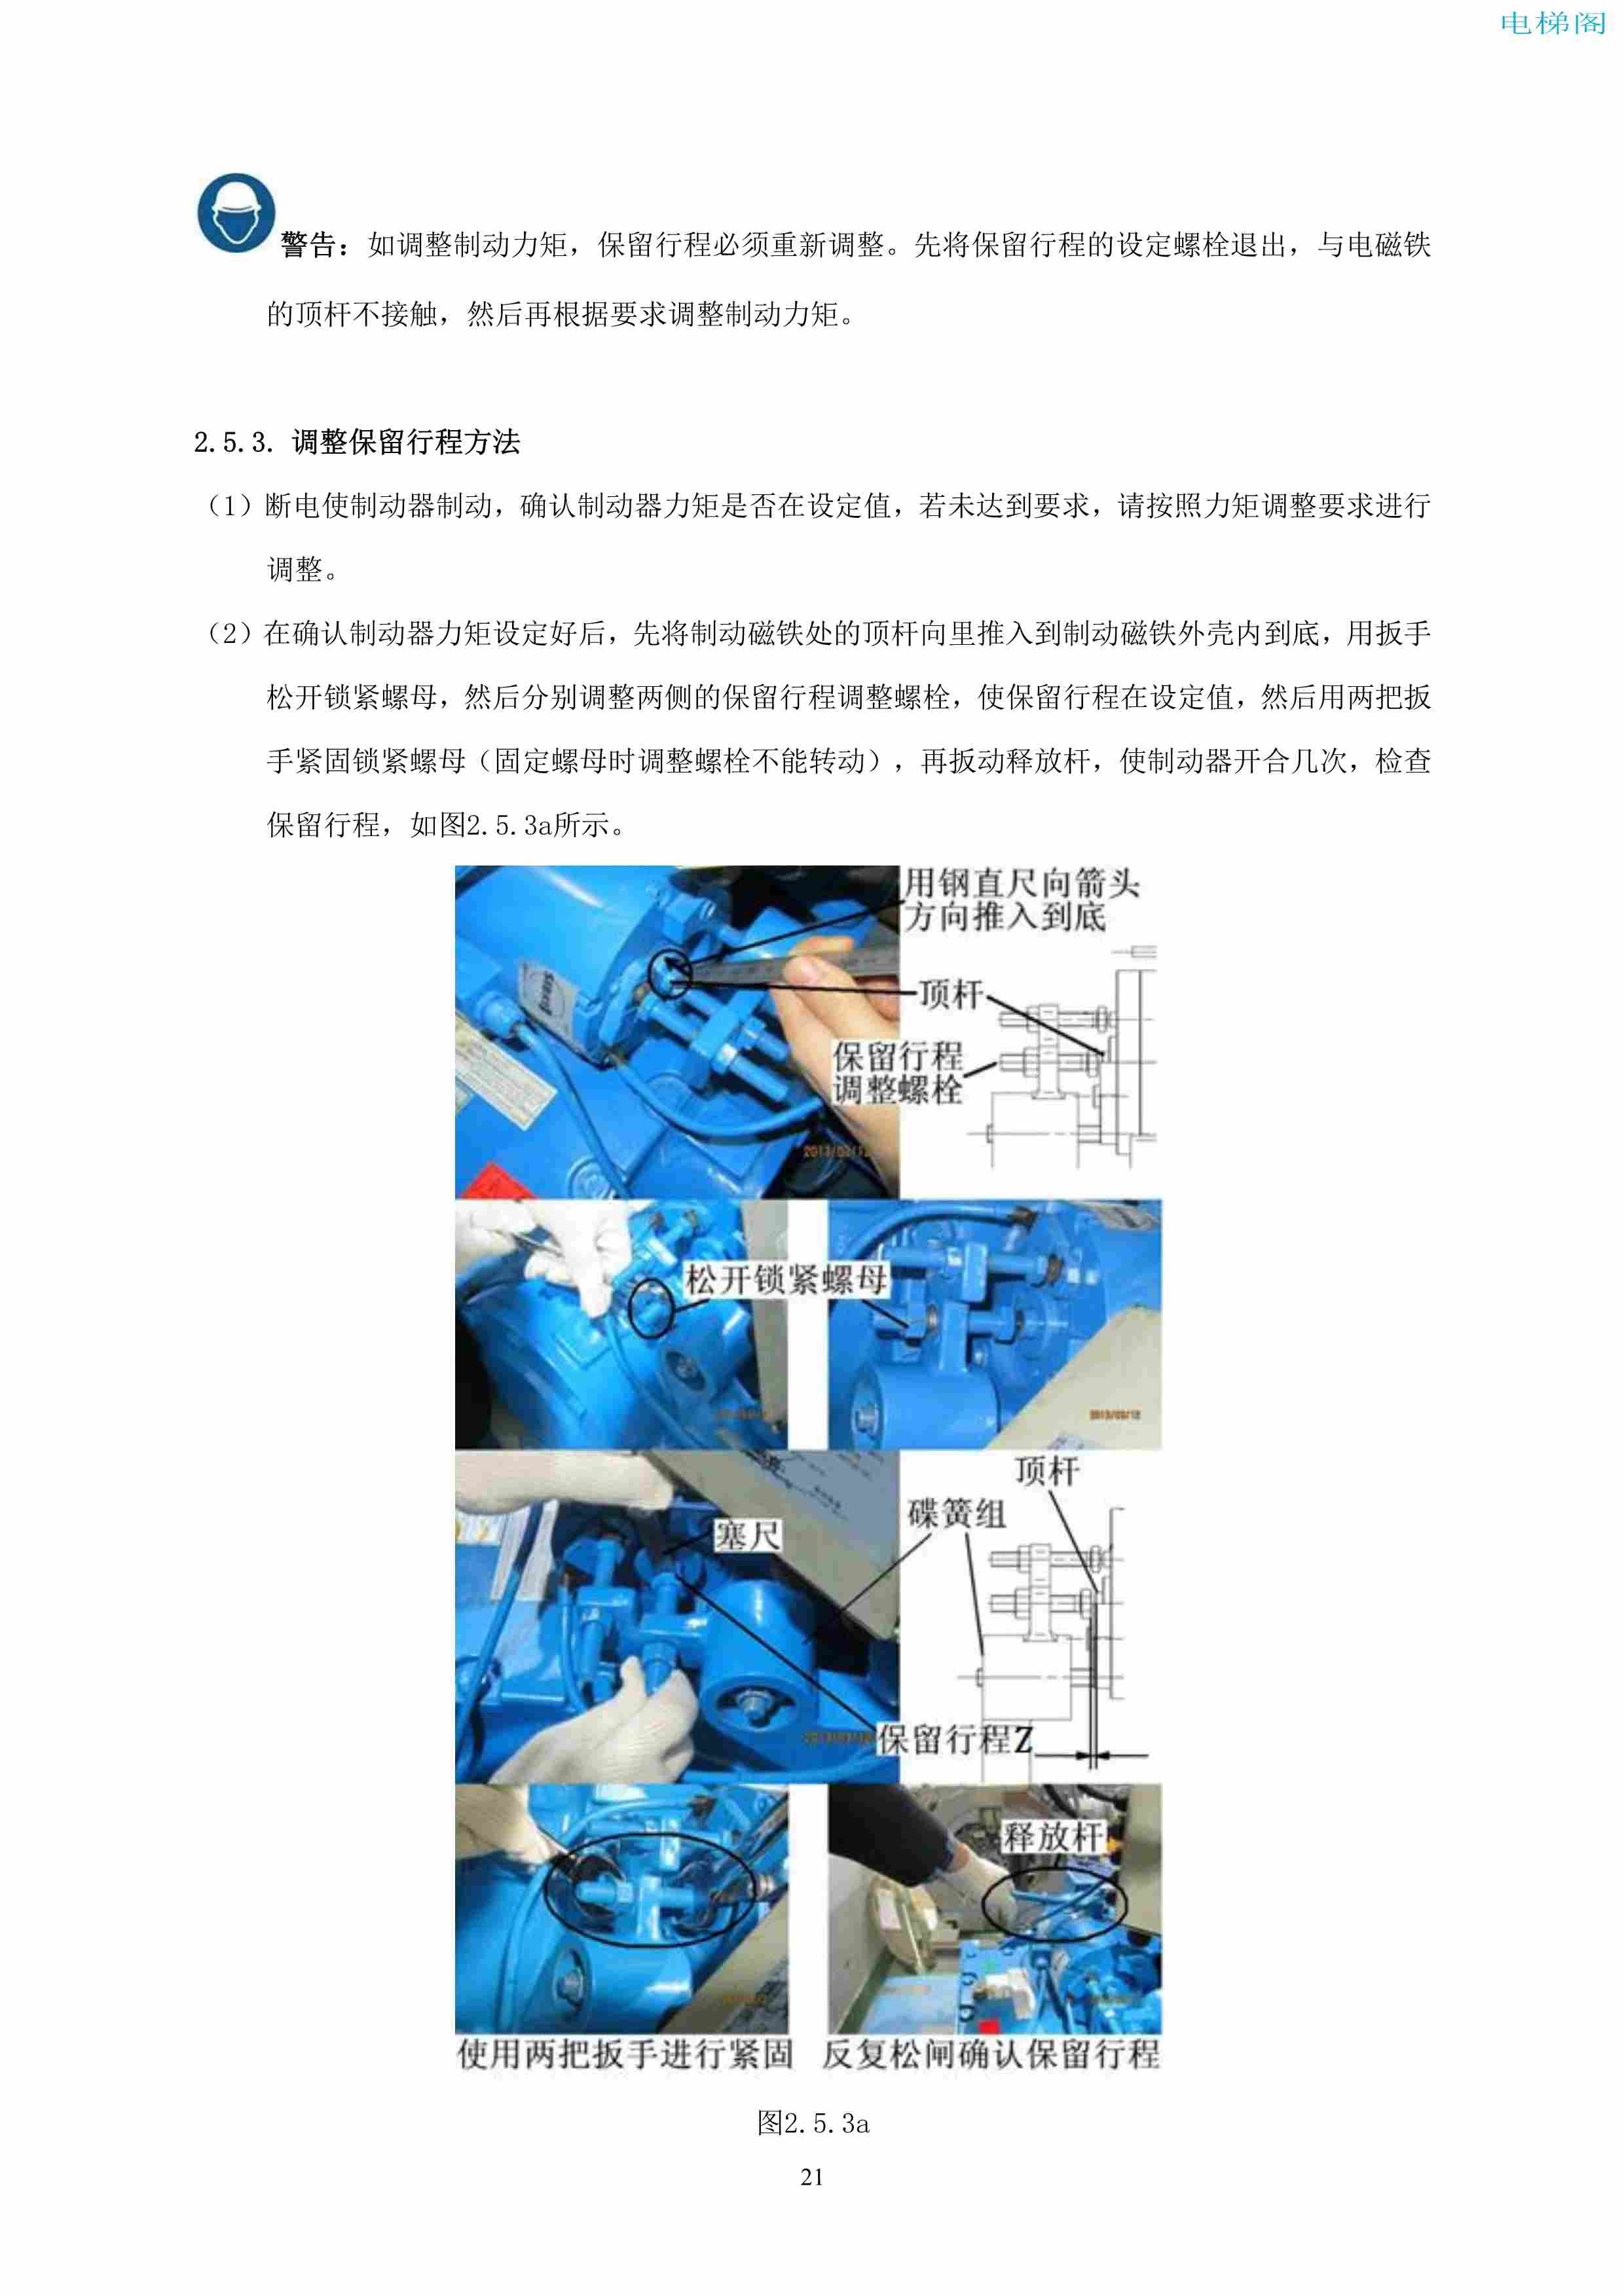 上海三菱电梯有限公司自动扶梯制动器维护作业要领汇编_22.jpg